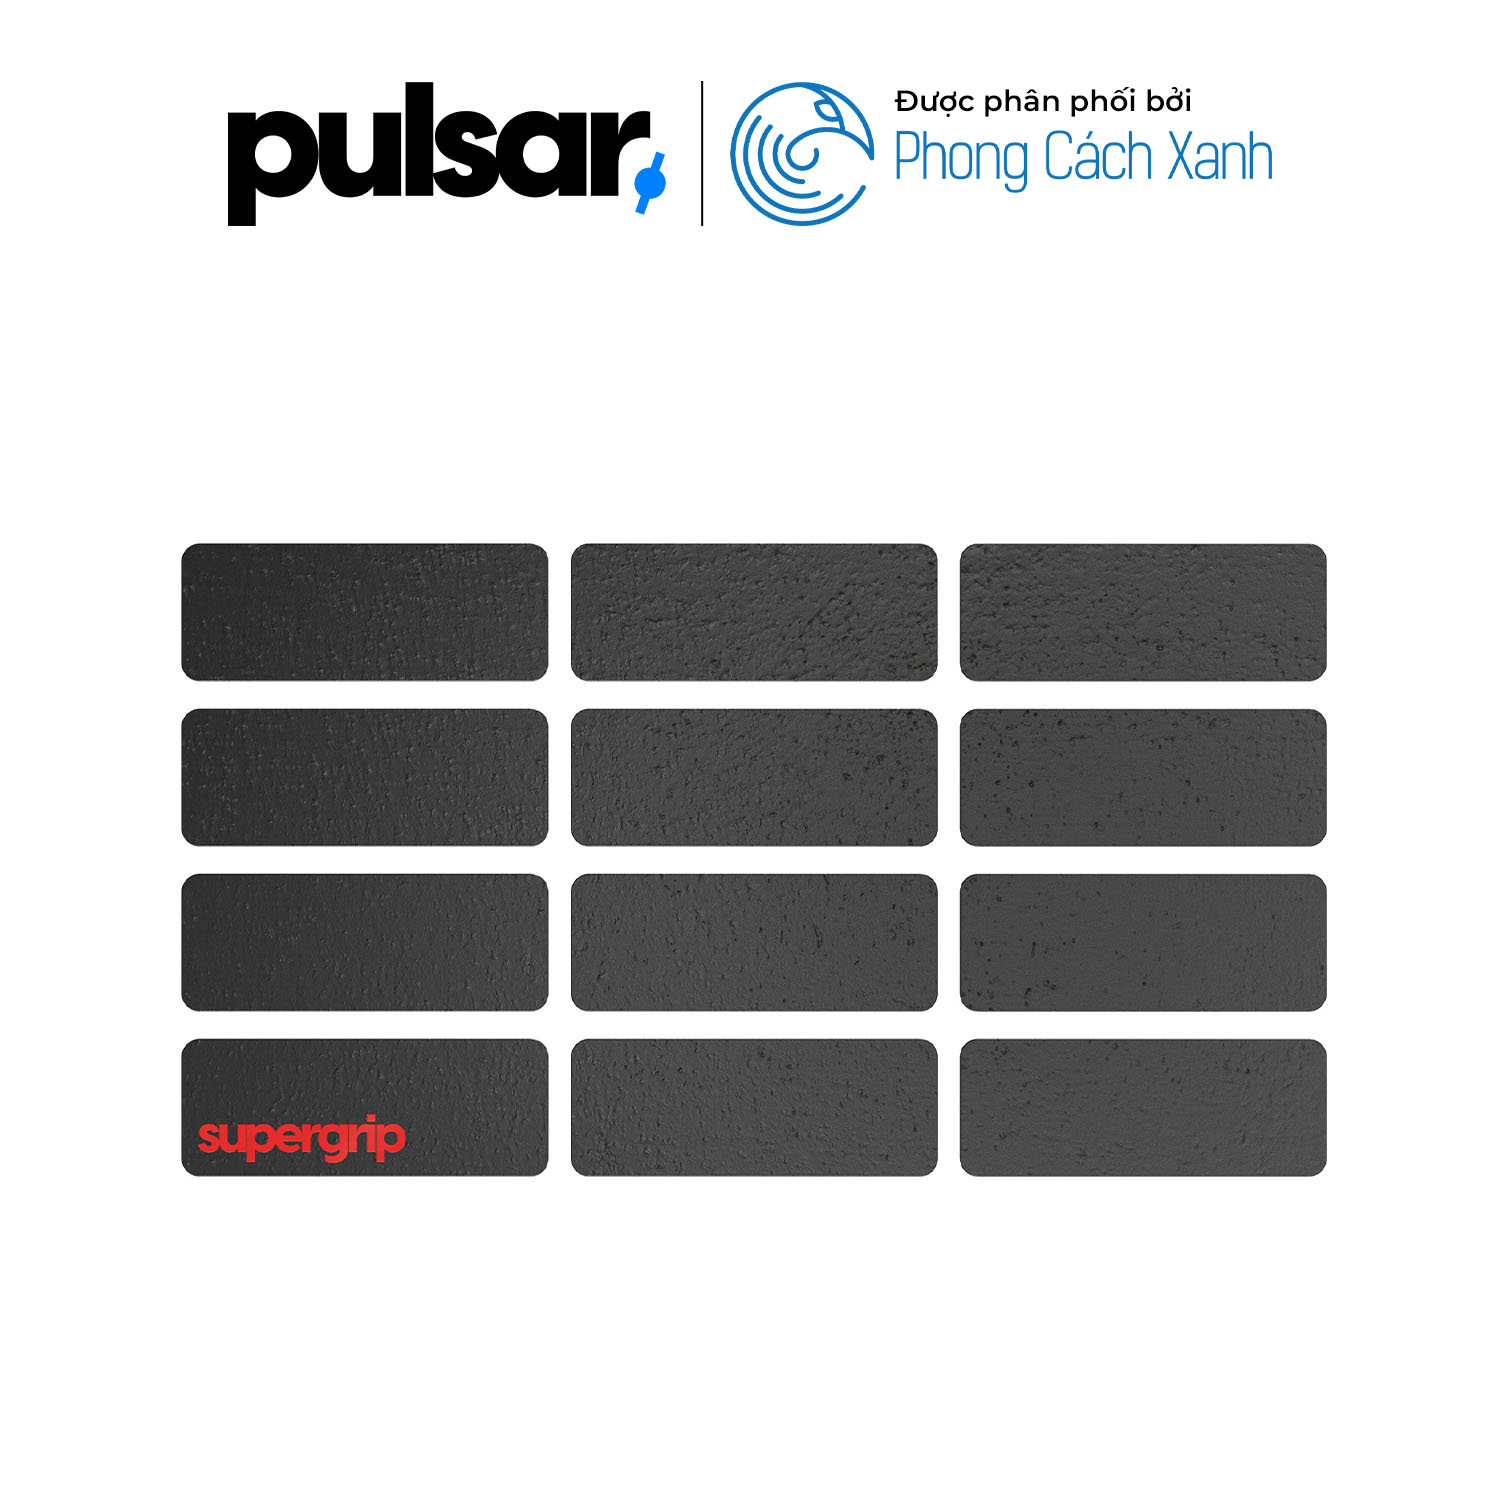 Miếng dán chống trượt Pulsar Supergrip - Universal 2 Grip Tape Precut Sheet - Hàng Chính Hãng